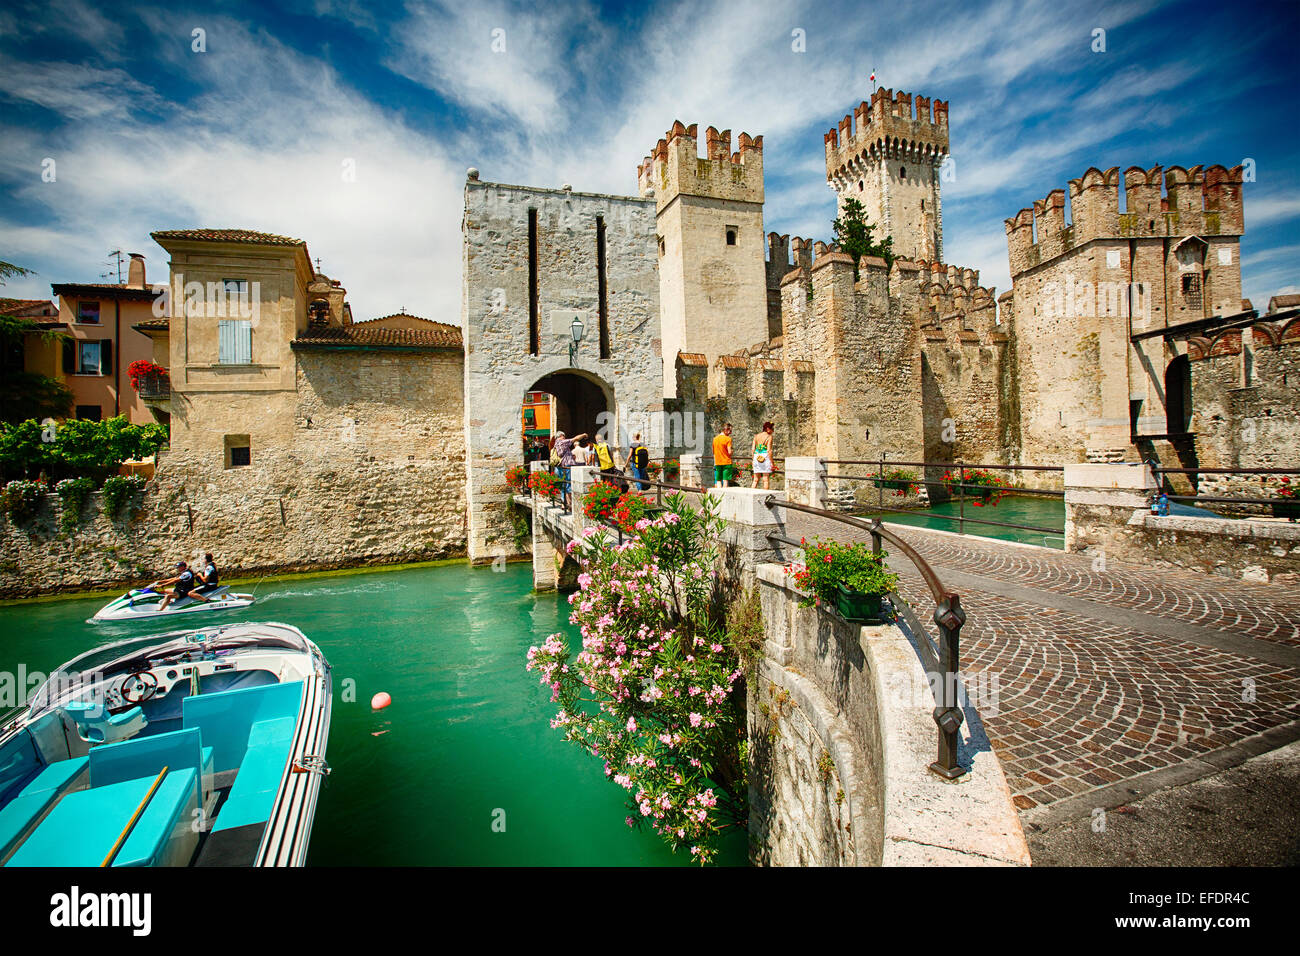 Vue d'un château dans le lac, Château Scaliger, Sirmione, Lac de Garde, Lombardie, Italie Banque D'Images